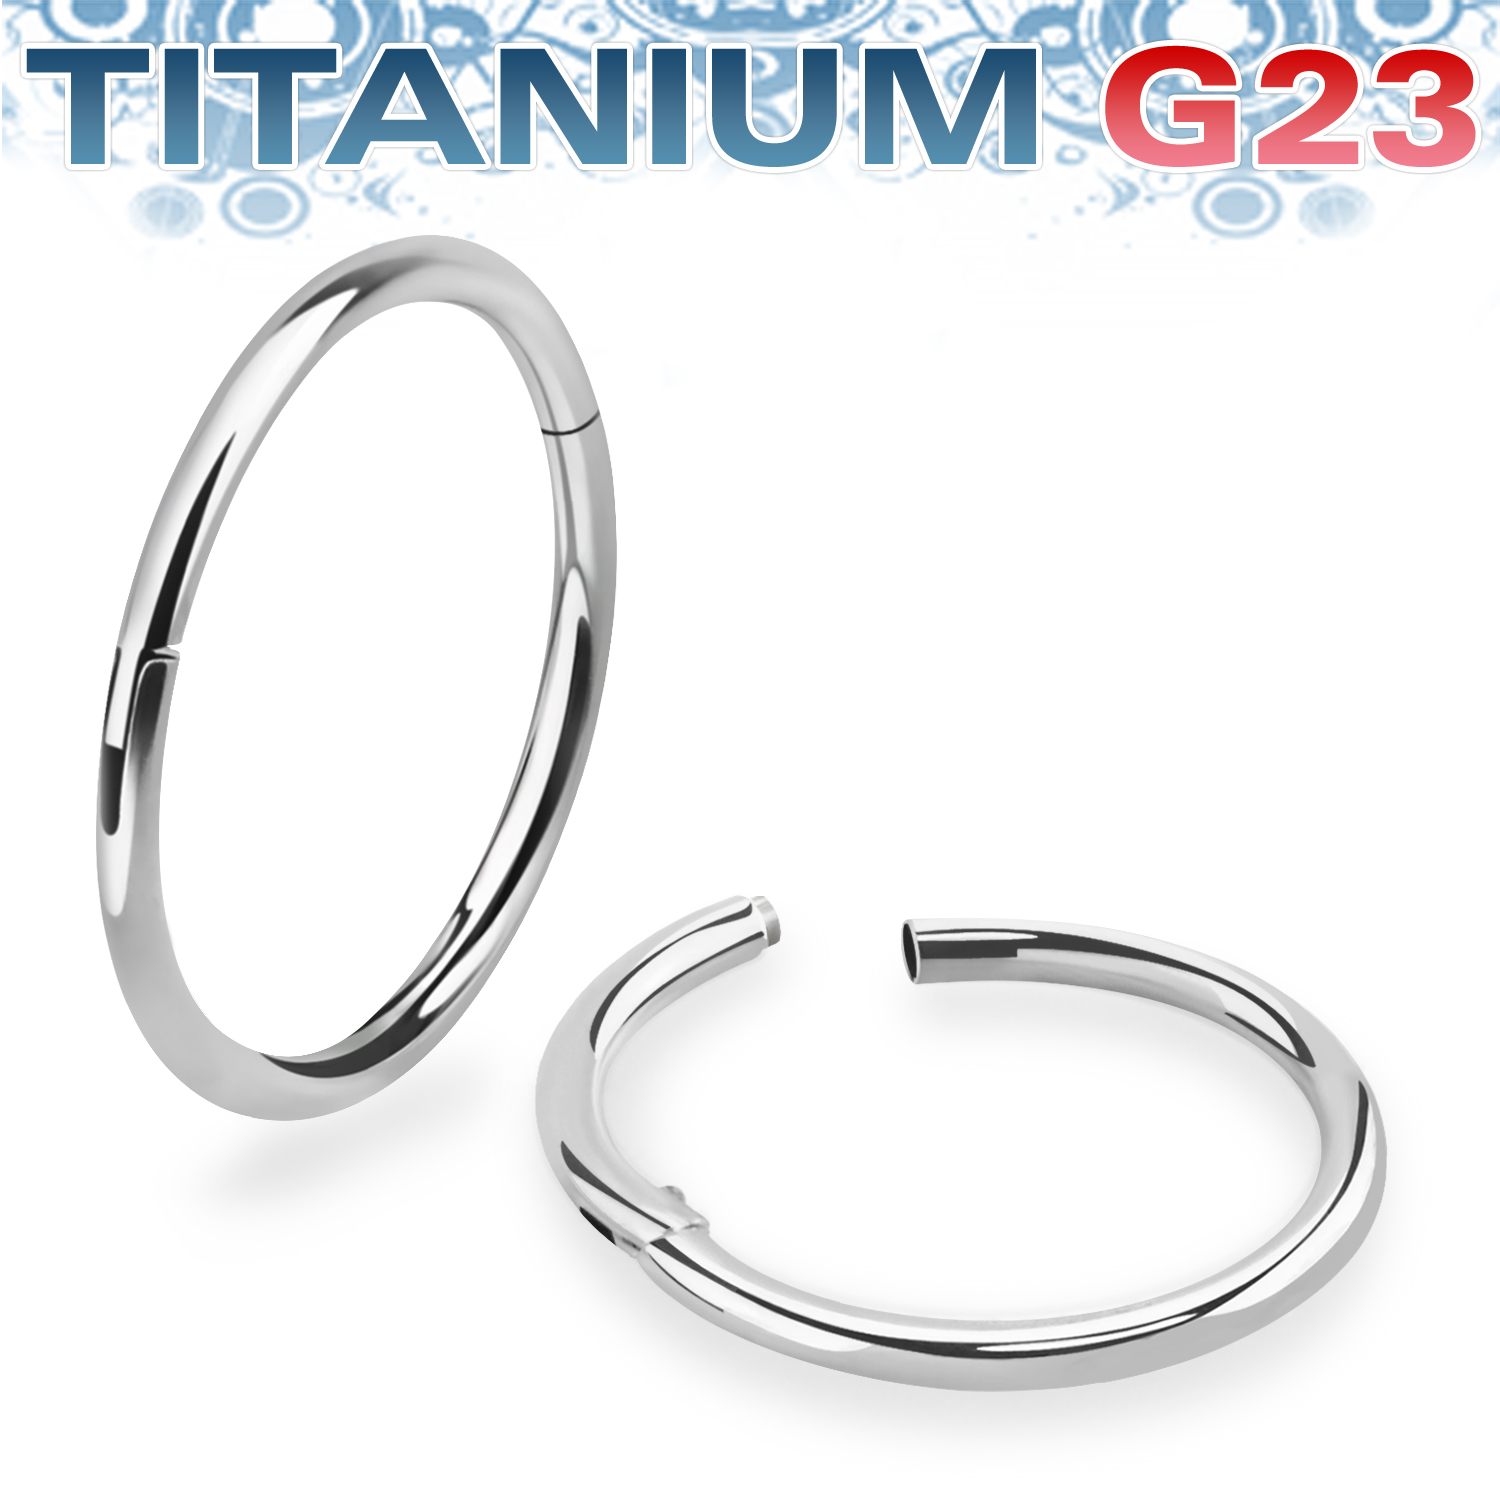 Segmentring 0.8mm i titanium med gångjärn